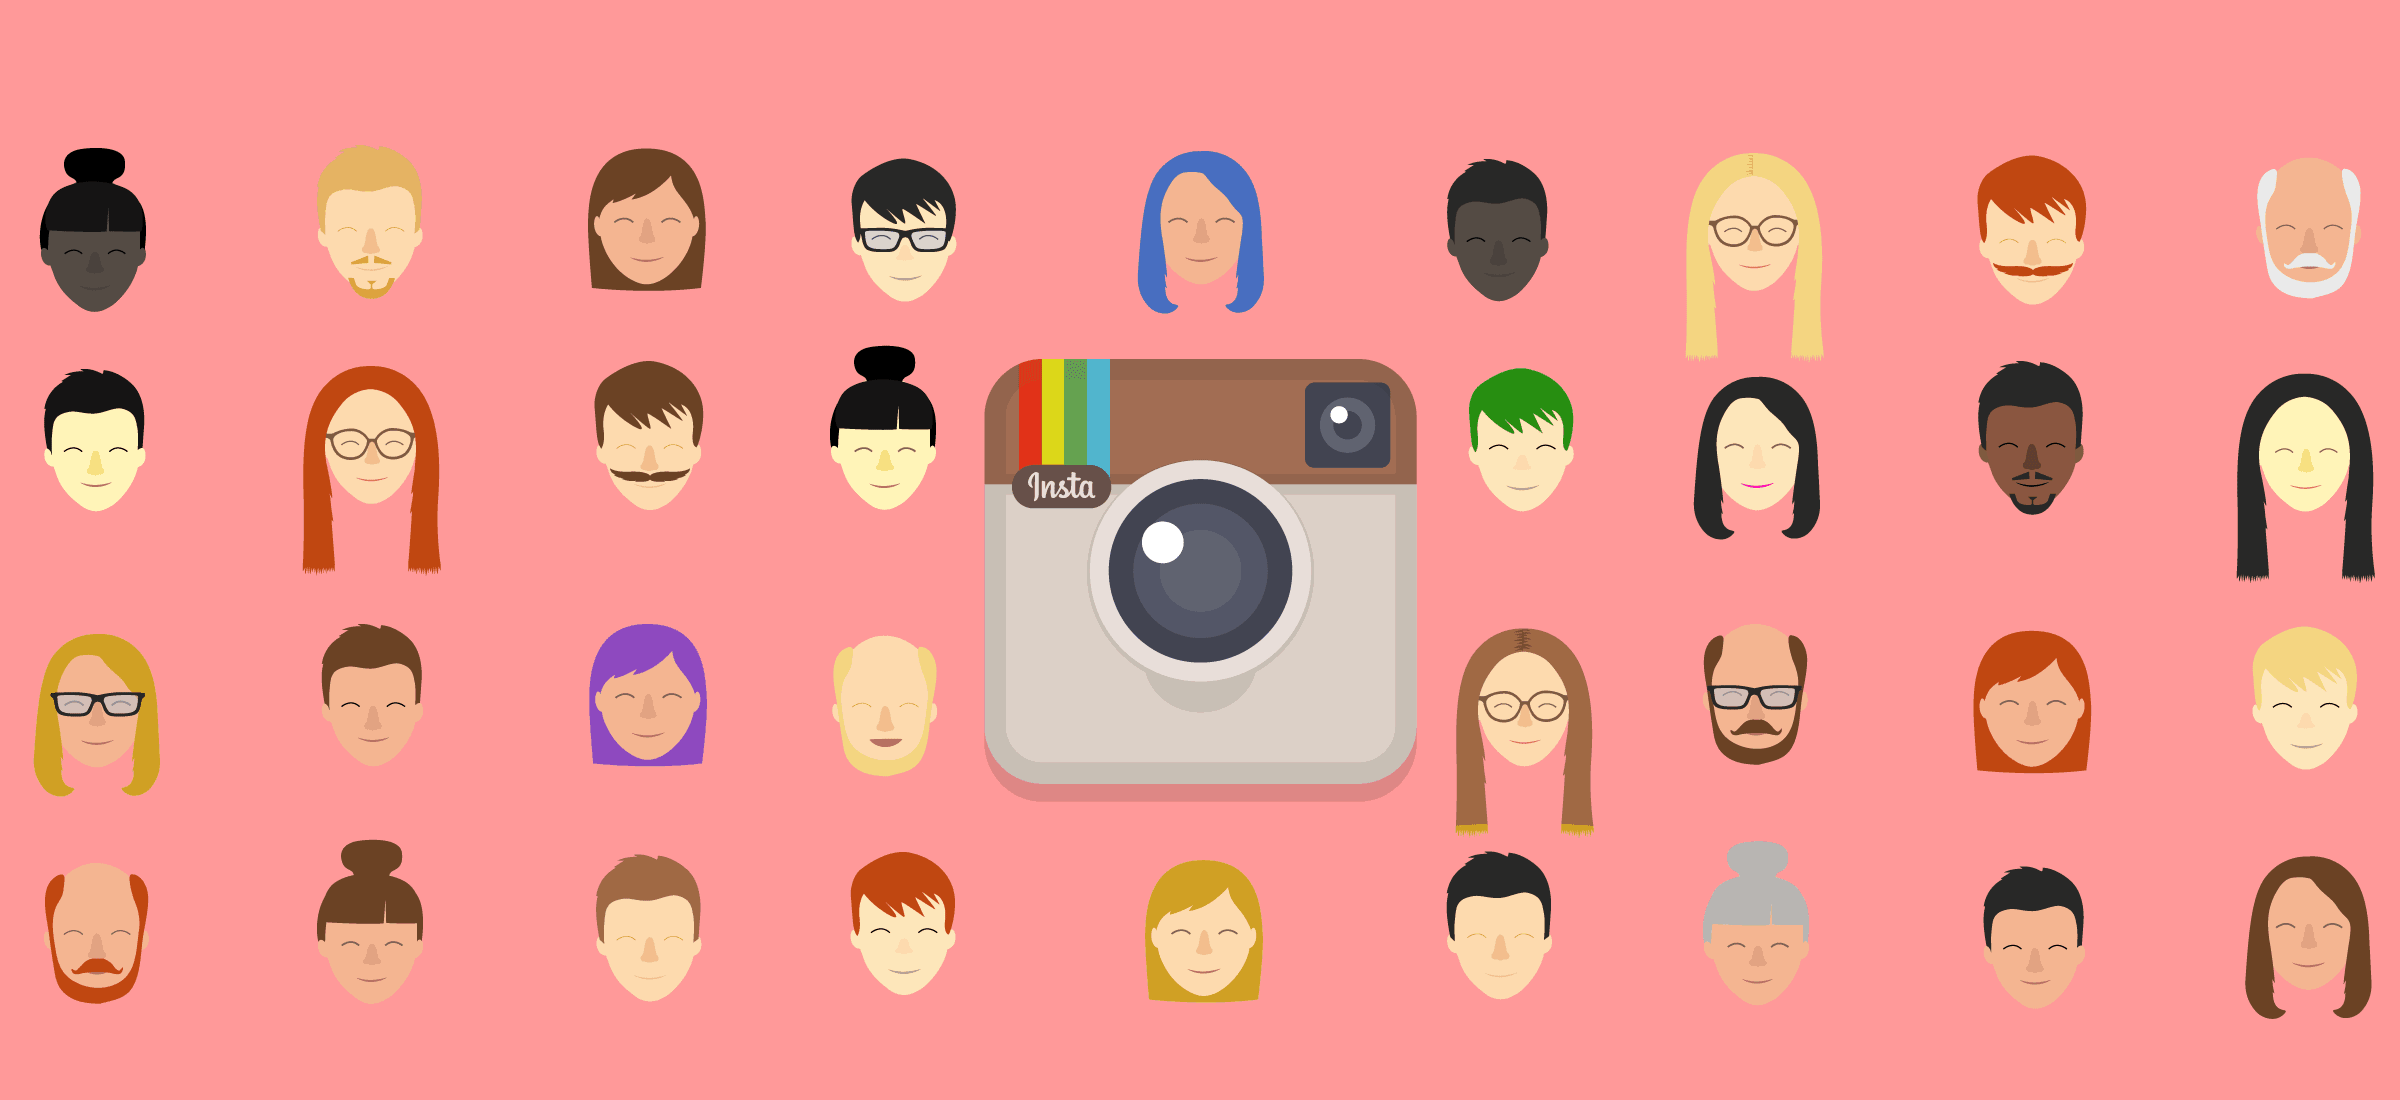 Jak założyć konto na Instagramie? – Instagram krok po kroku